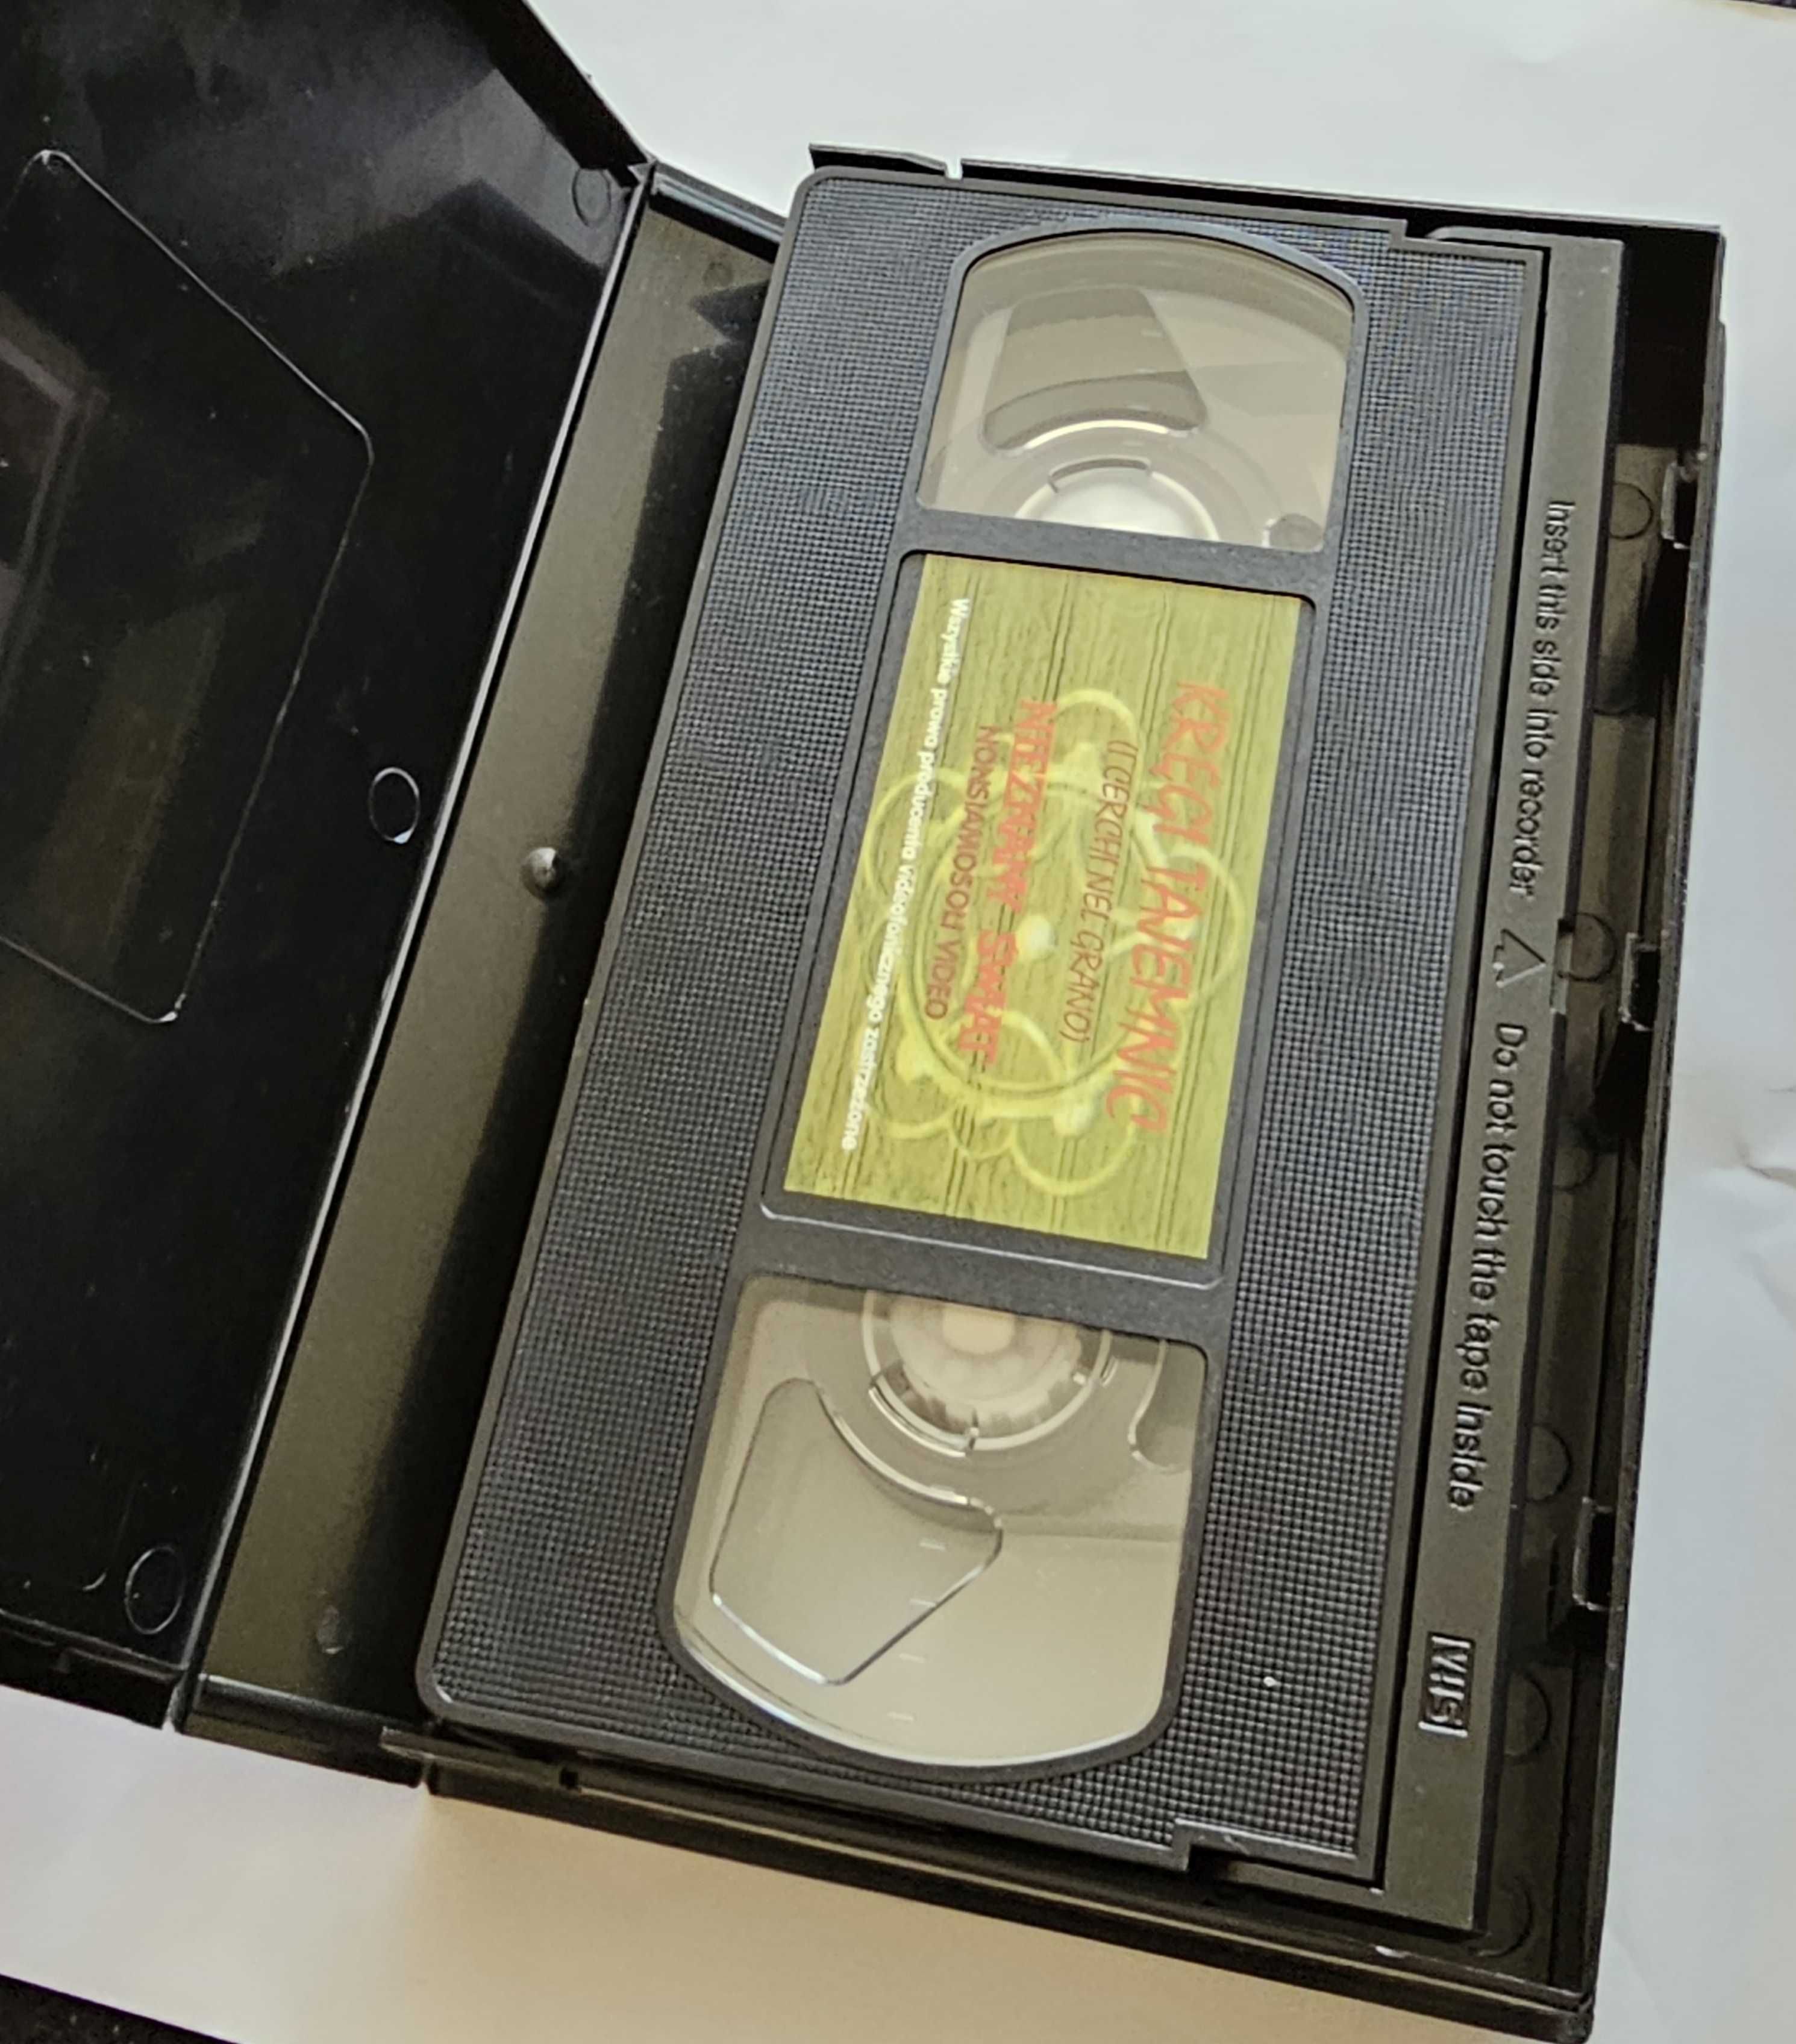 Kręgi tajemnic - Nieznany Świat - kaseta VHS